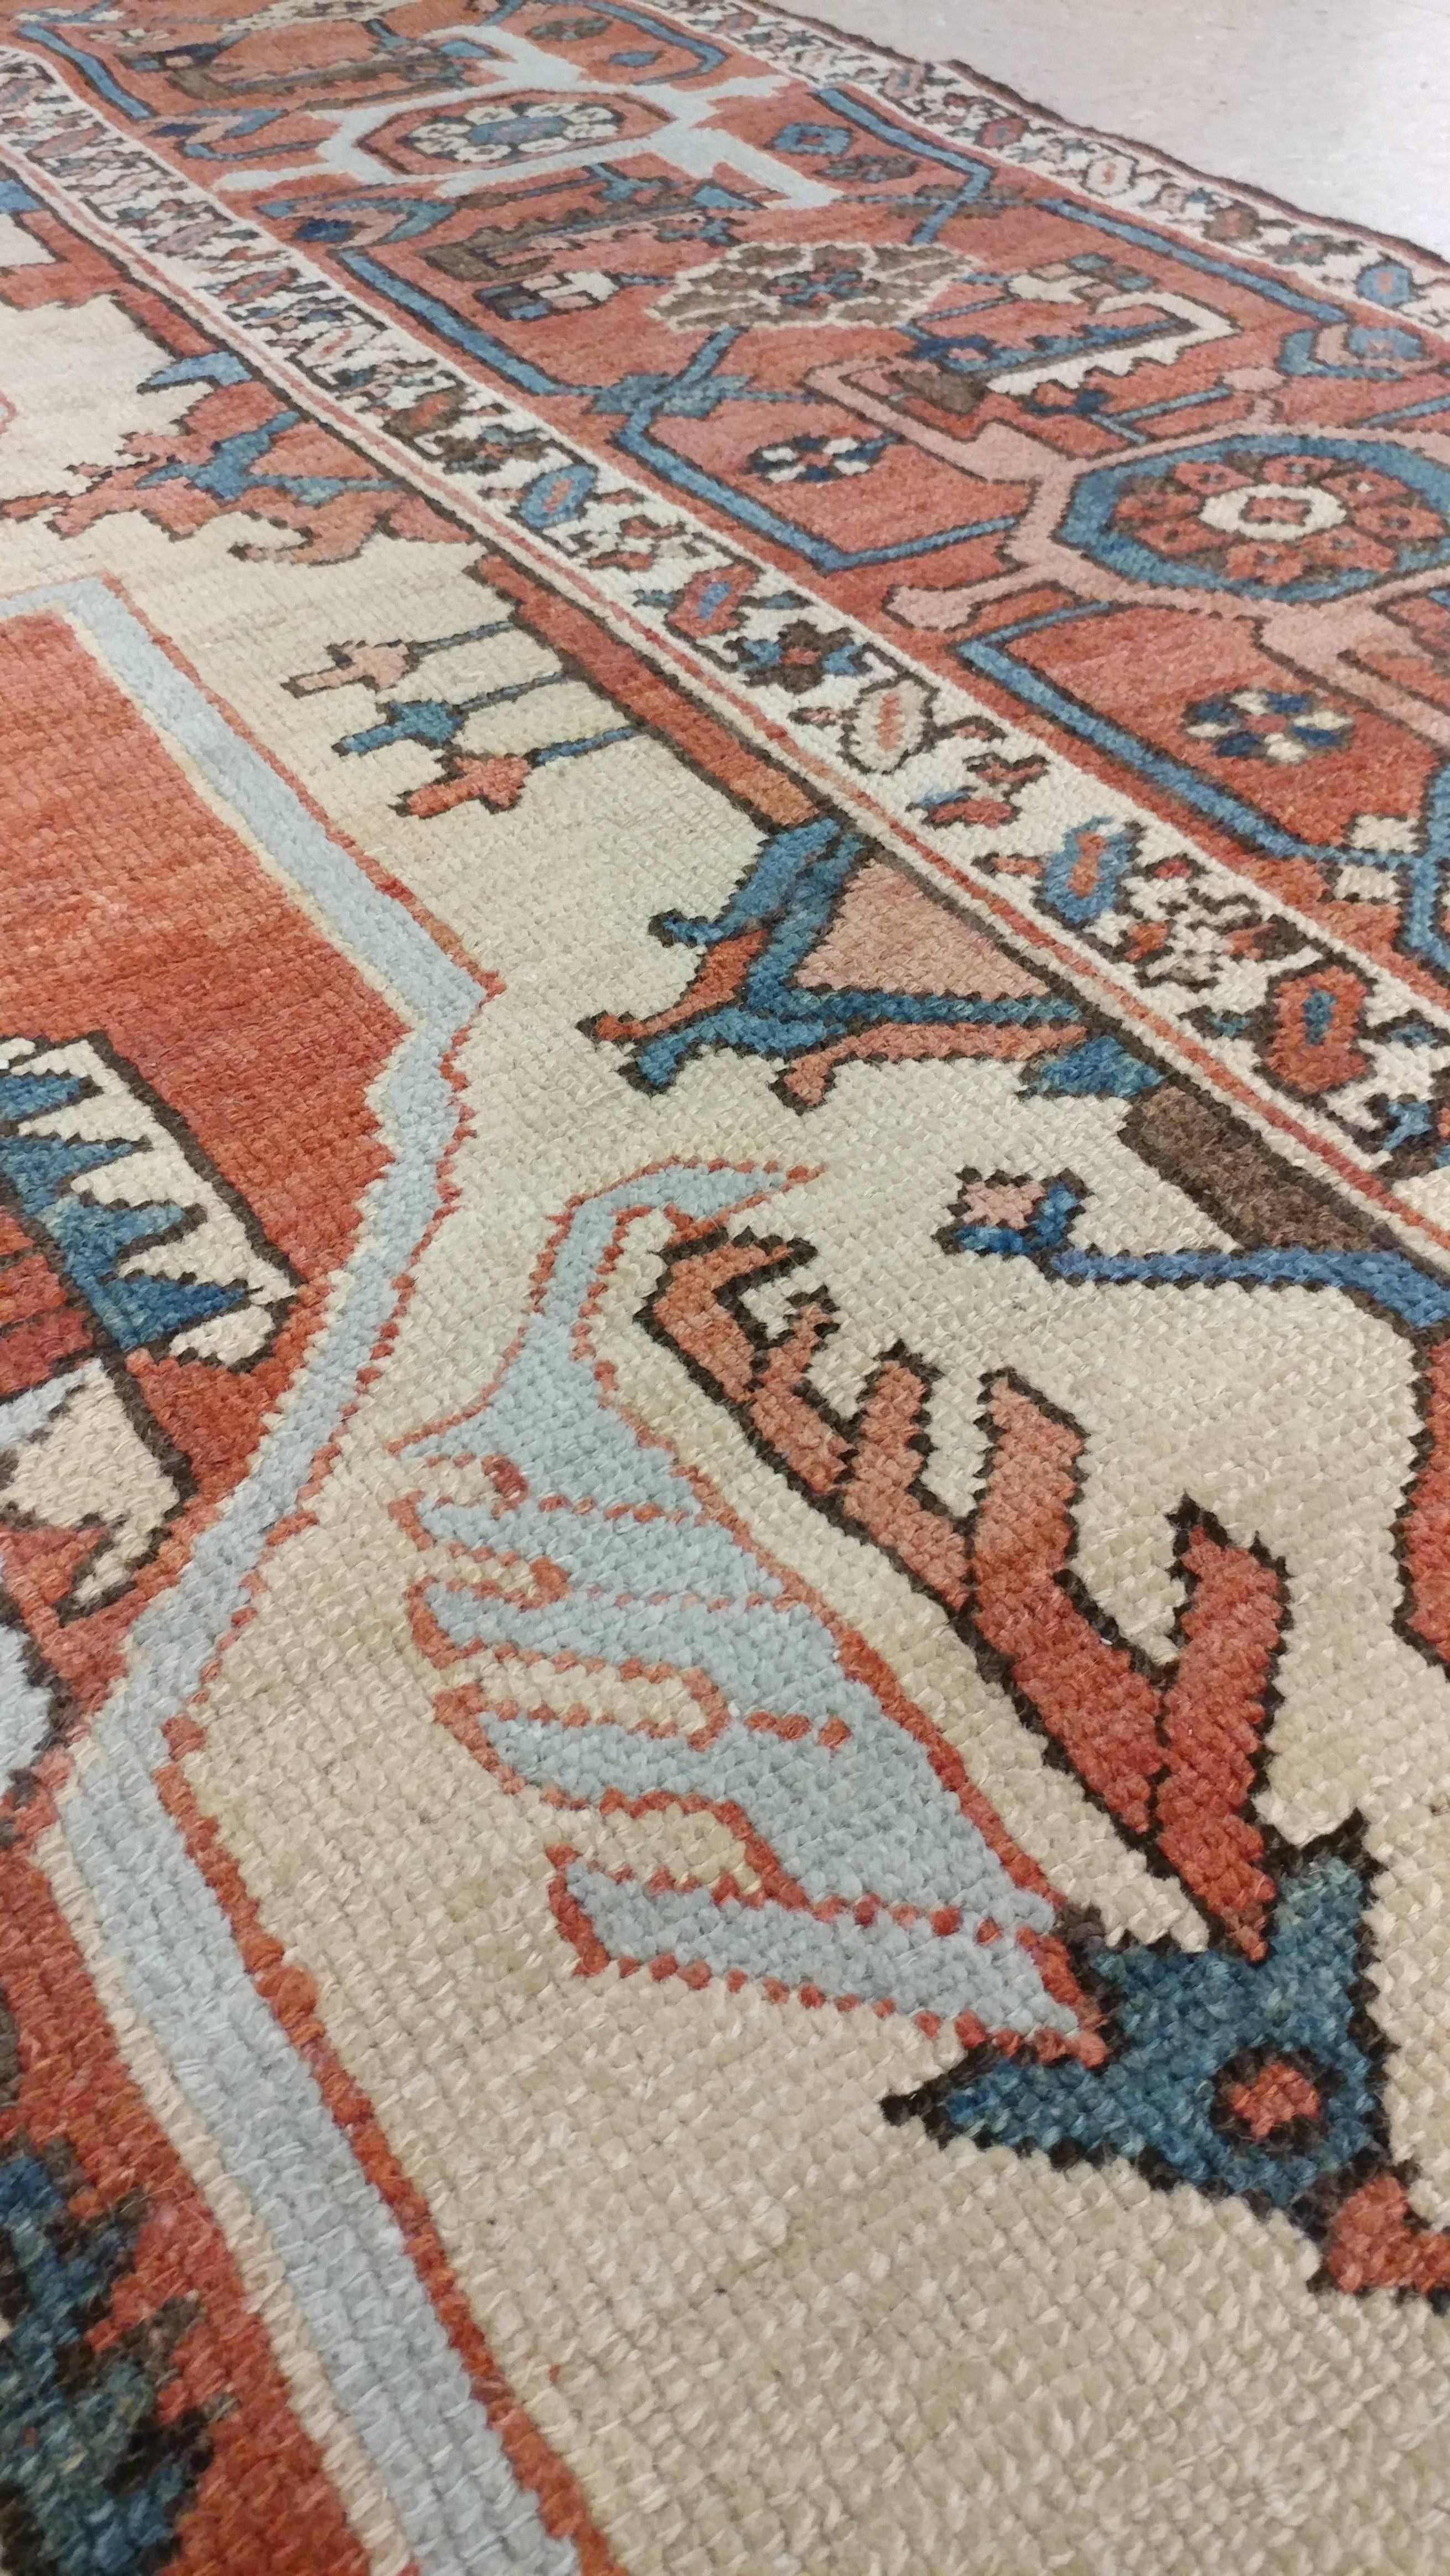 Antique Persian Handmade Wool Oriental Serapi Carpet, Rust, Gold, Light Blue 2